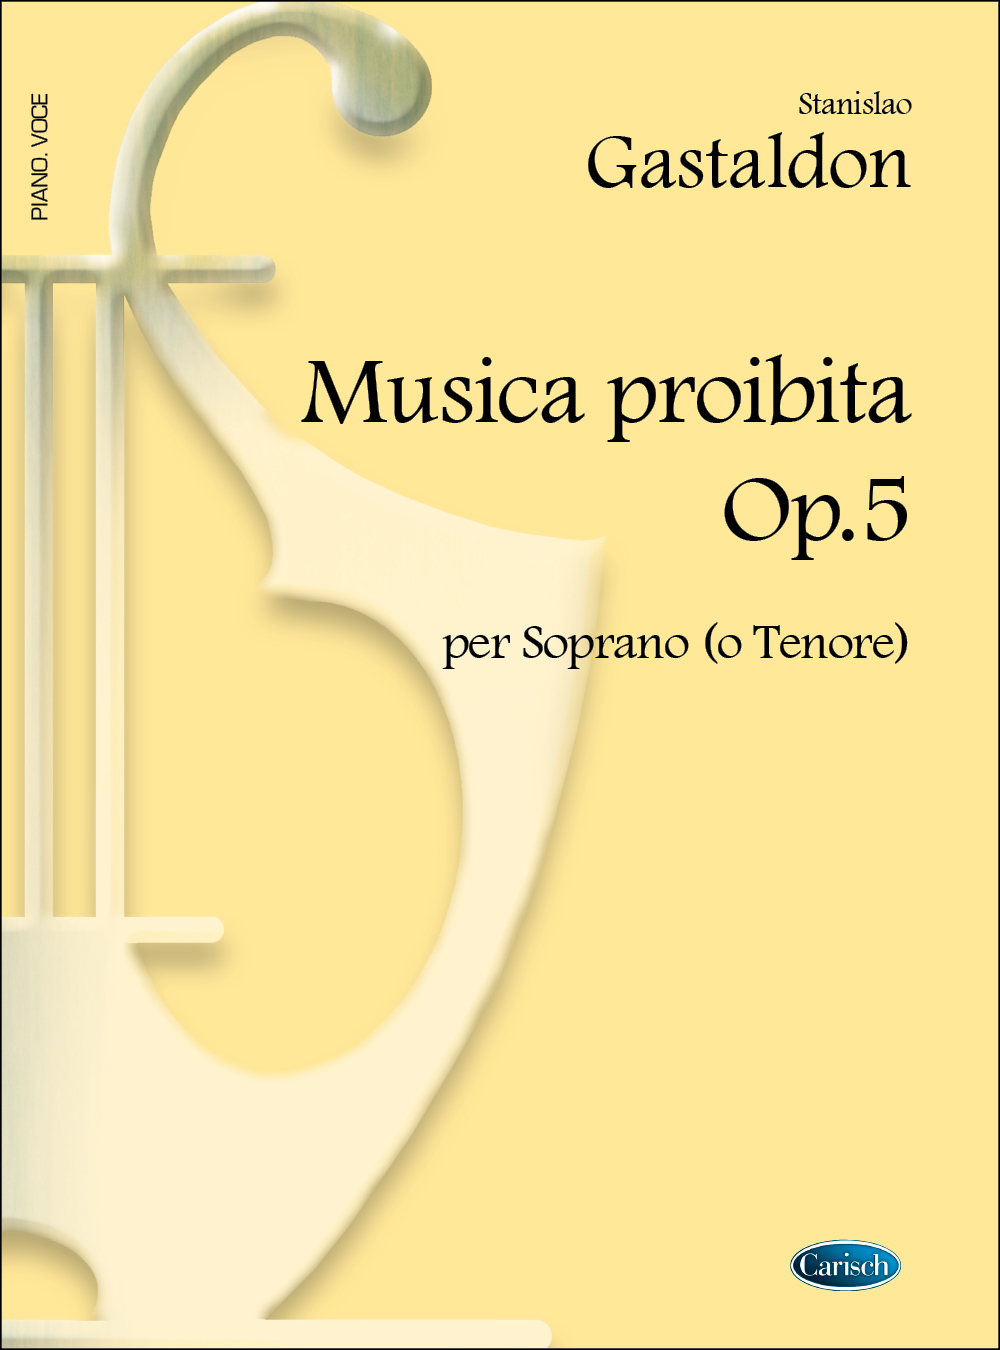 Stanislao Gastaldon: Musica Proibita Op.5 Per Soprano O Tenore: Voice: Single